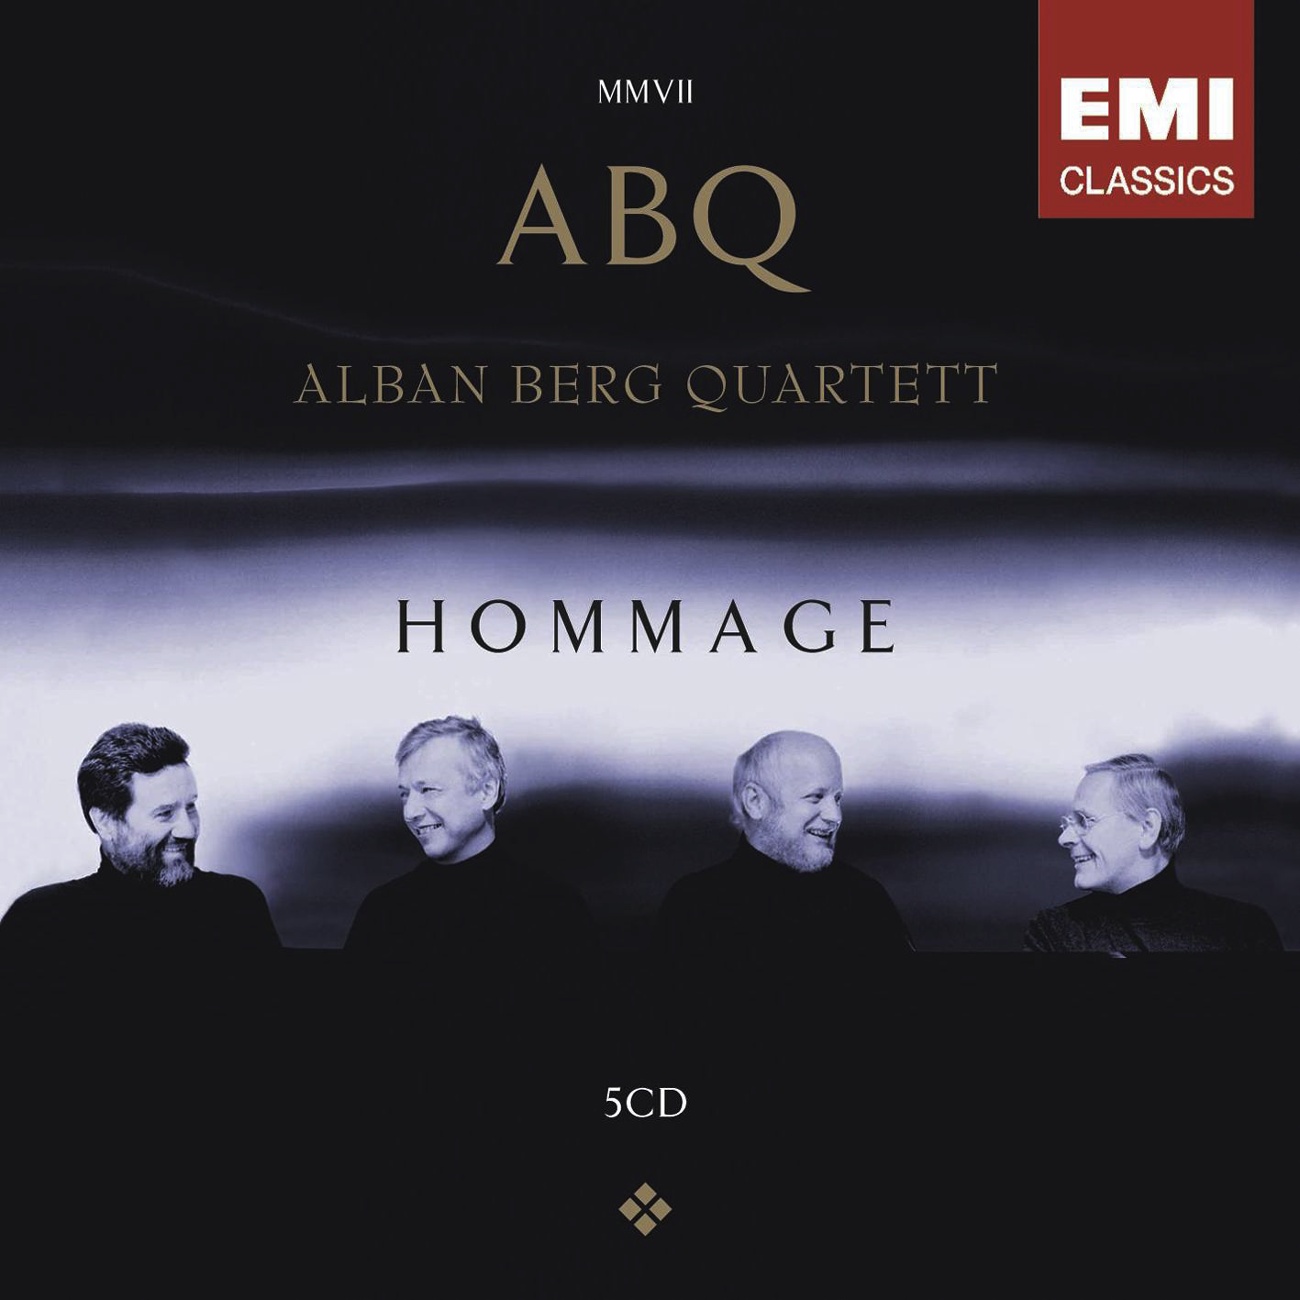 String Quartet No. 1 in E Minor, "From my life":I. Allegro vivo appassionato